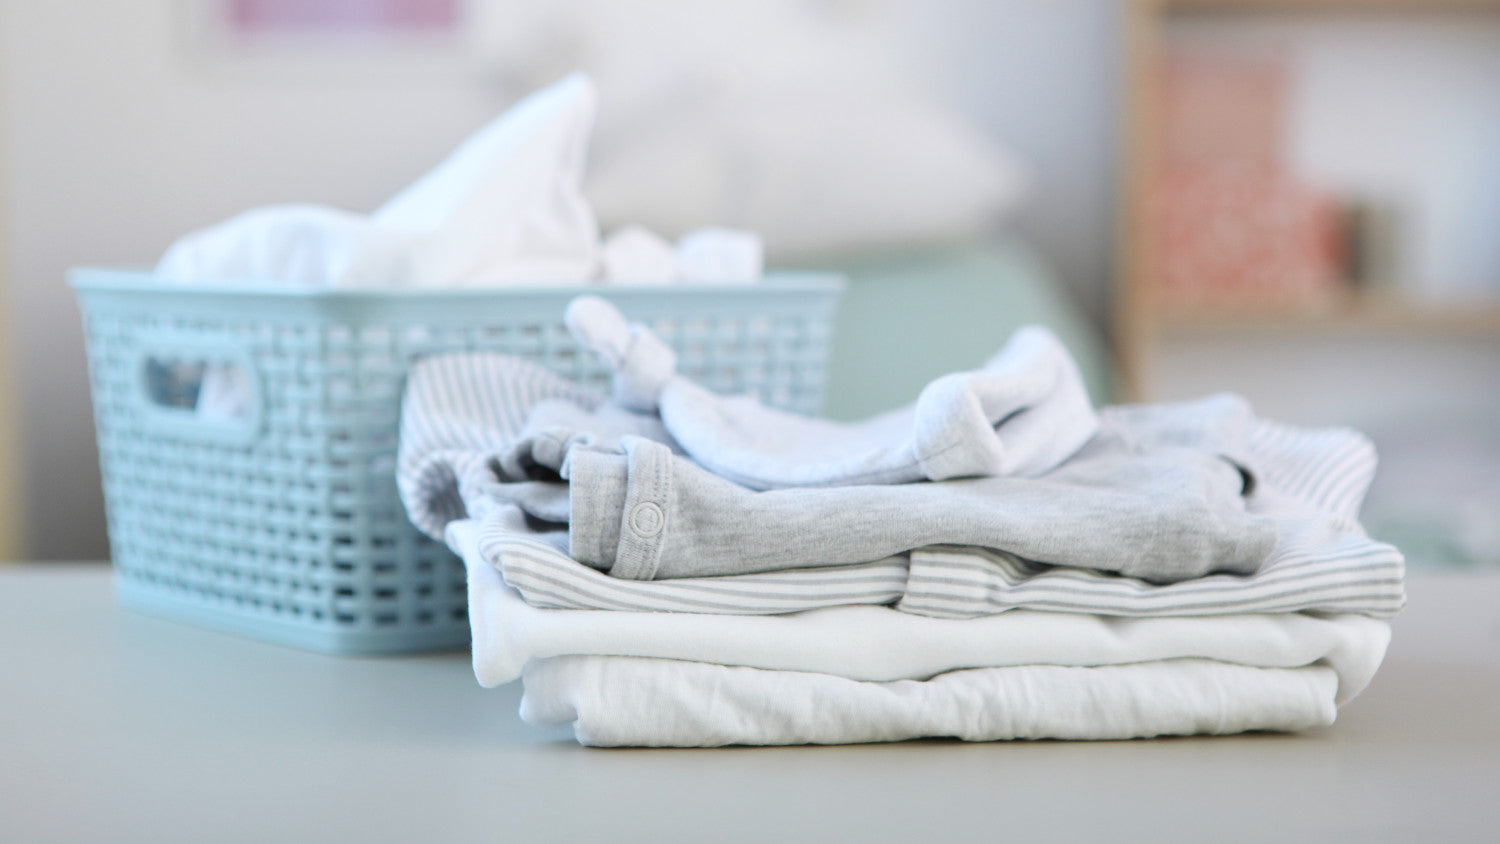 Bébé : quelle lessive choisir et comment bien nettoyer le linge ?